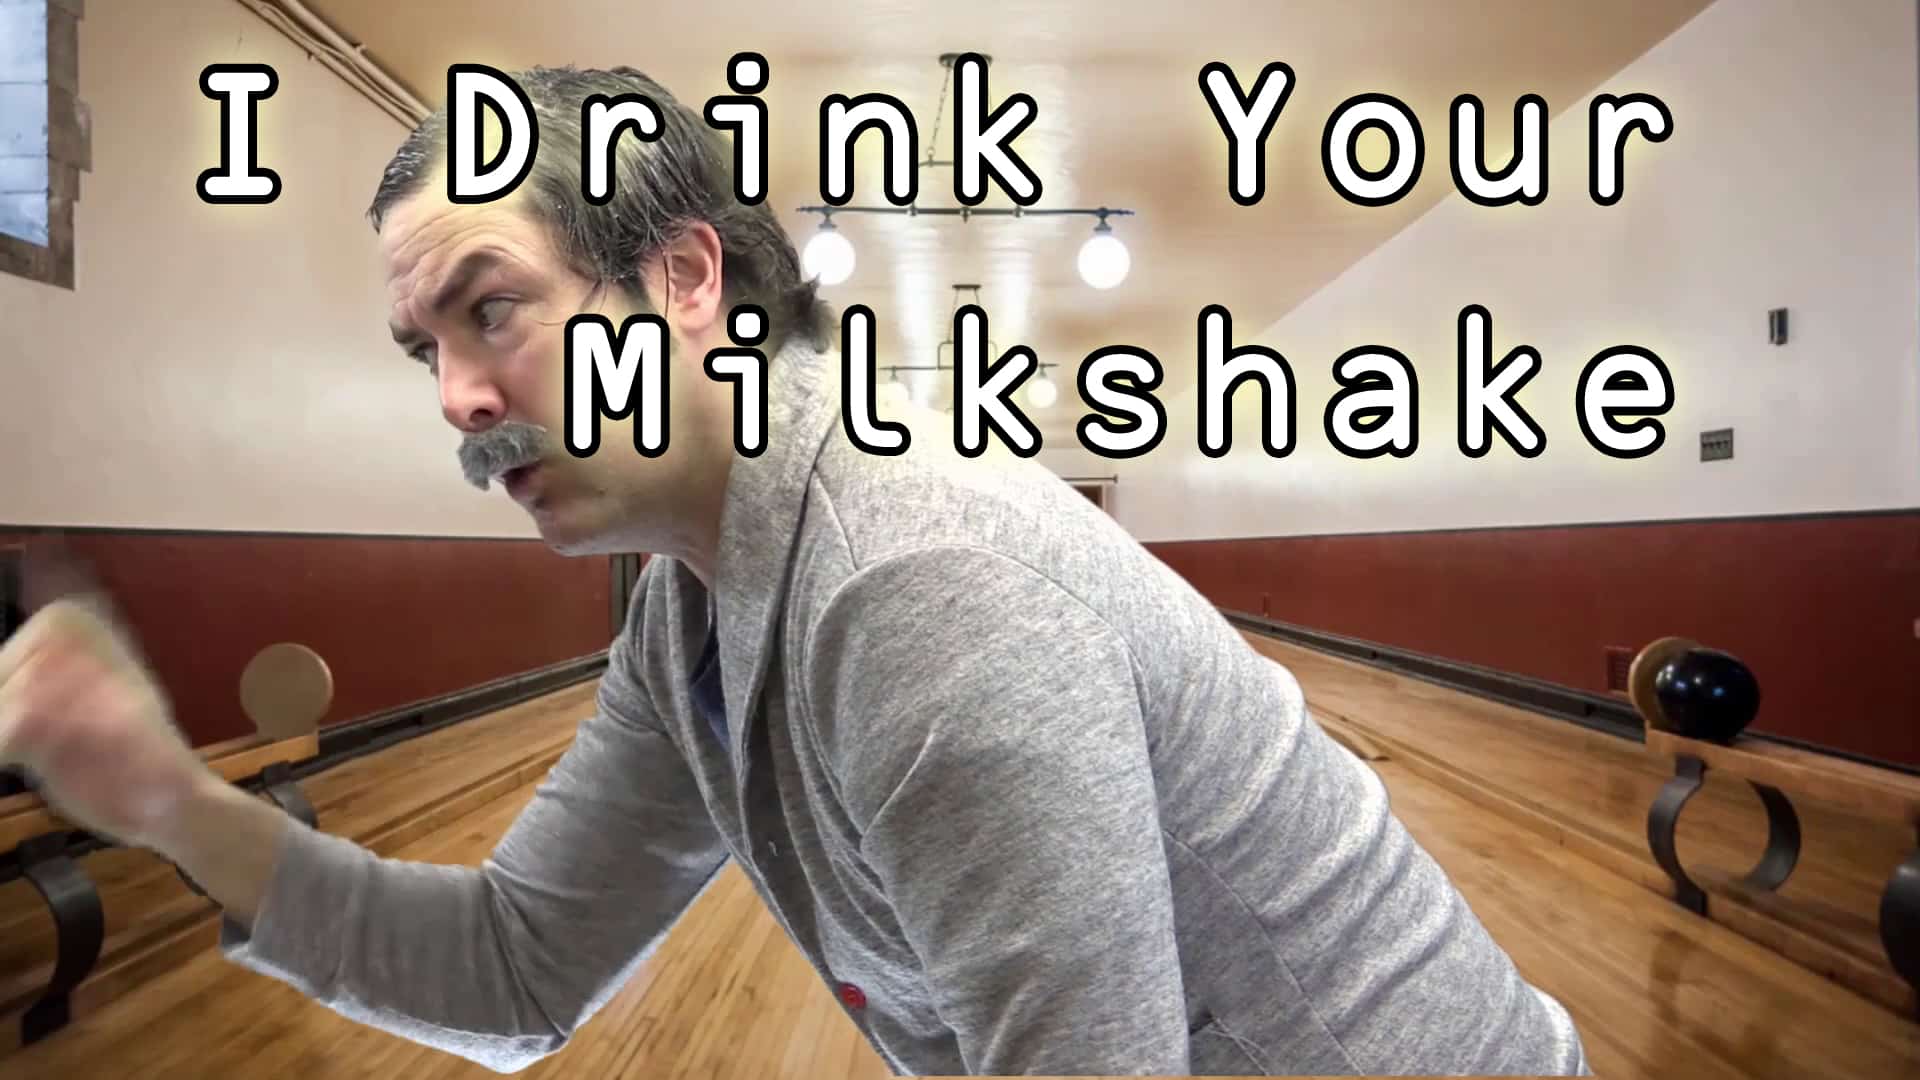 i drink your youtube fishing milkshake